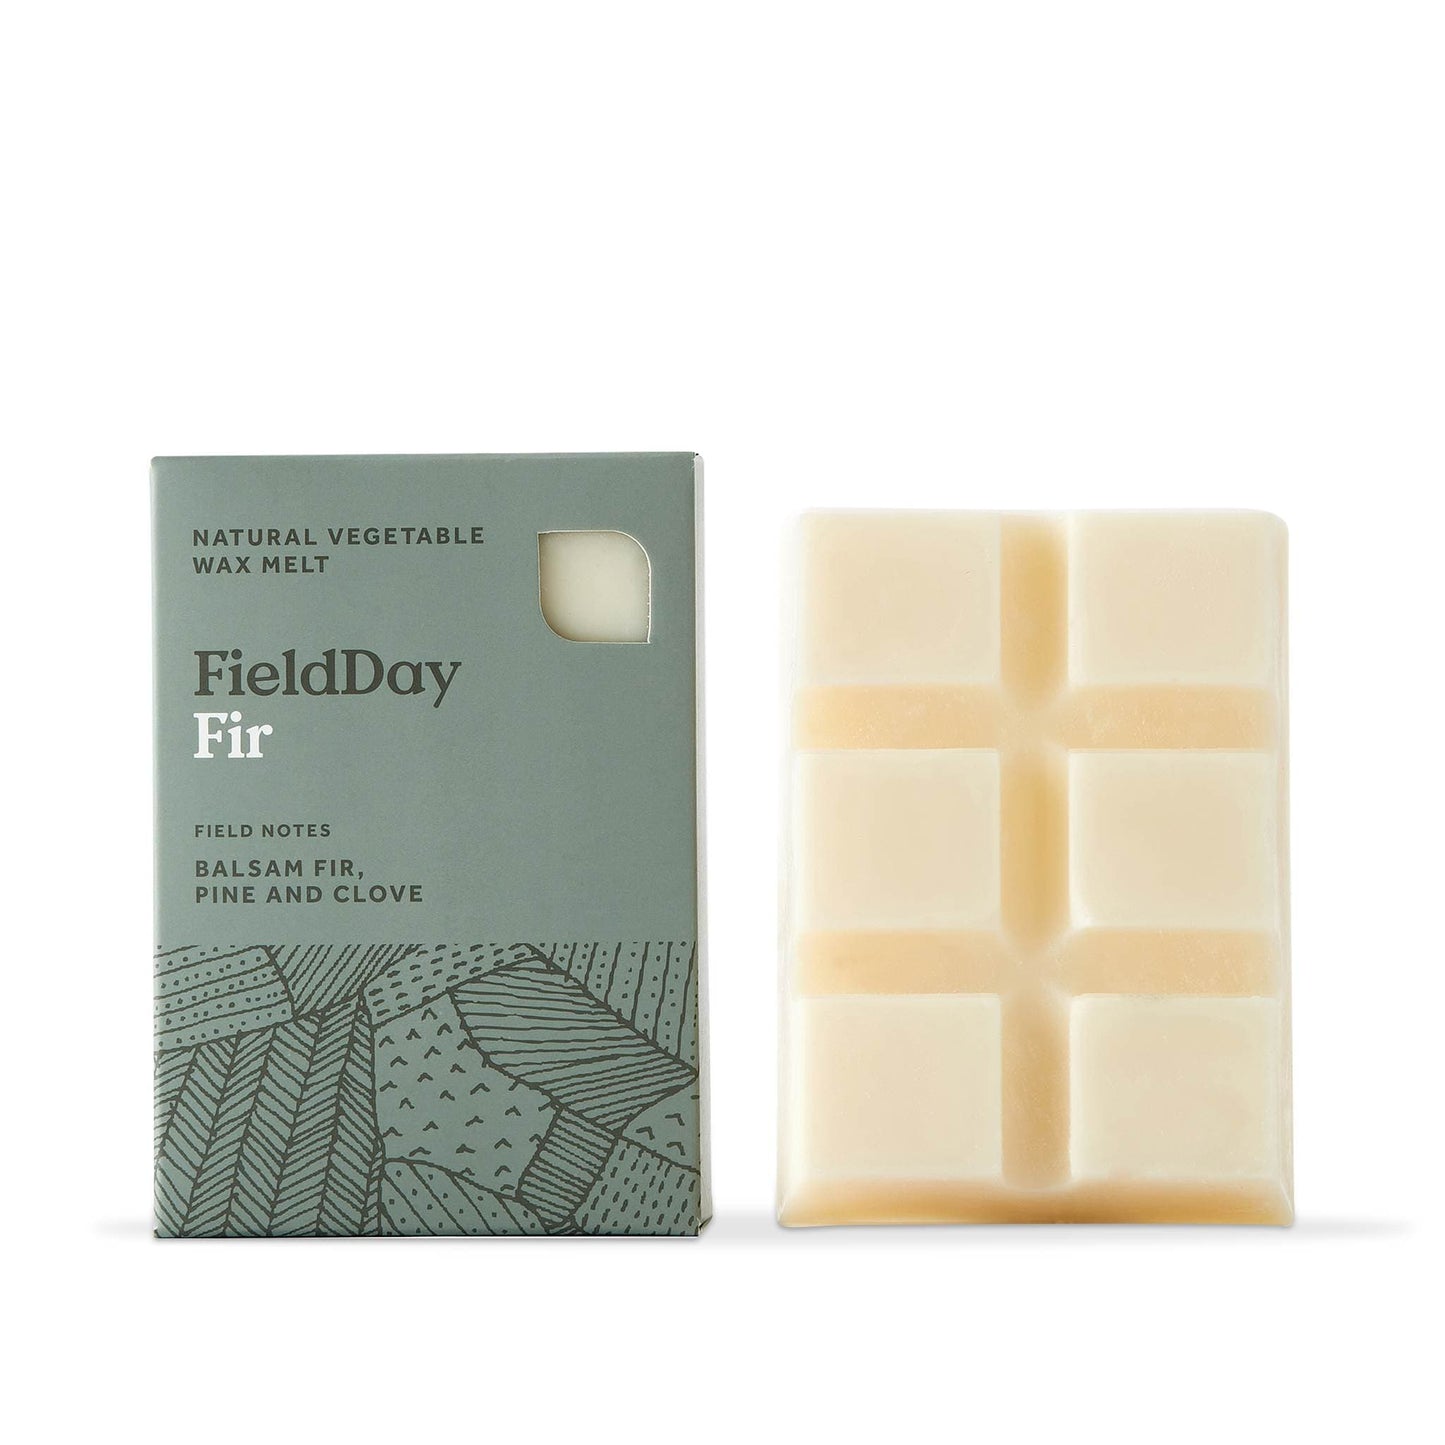 FieldDay Wax Tarts Fir Wax Melts - Natural Vegetable Wax Melts - FieldDay